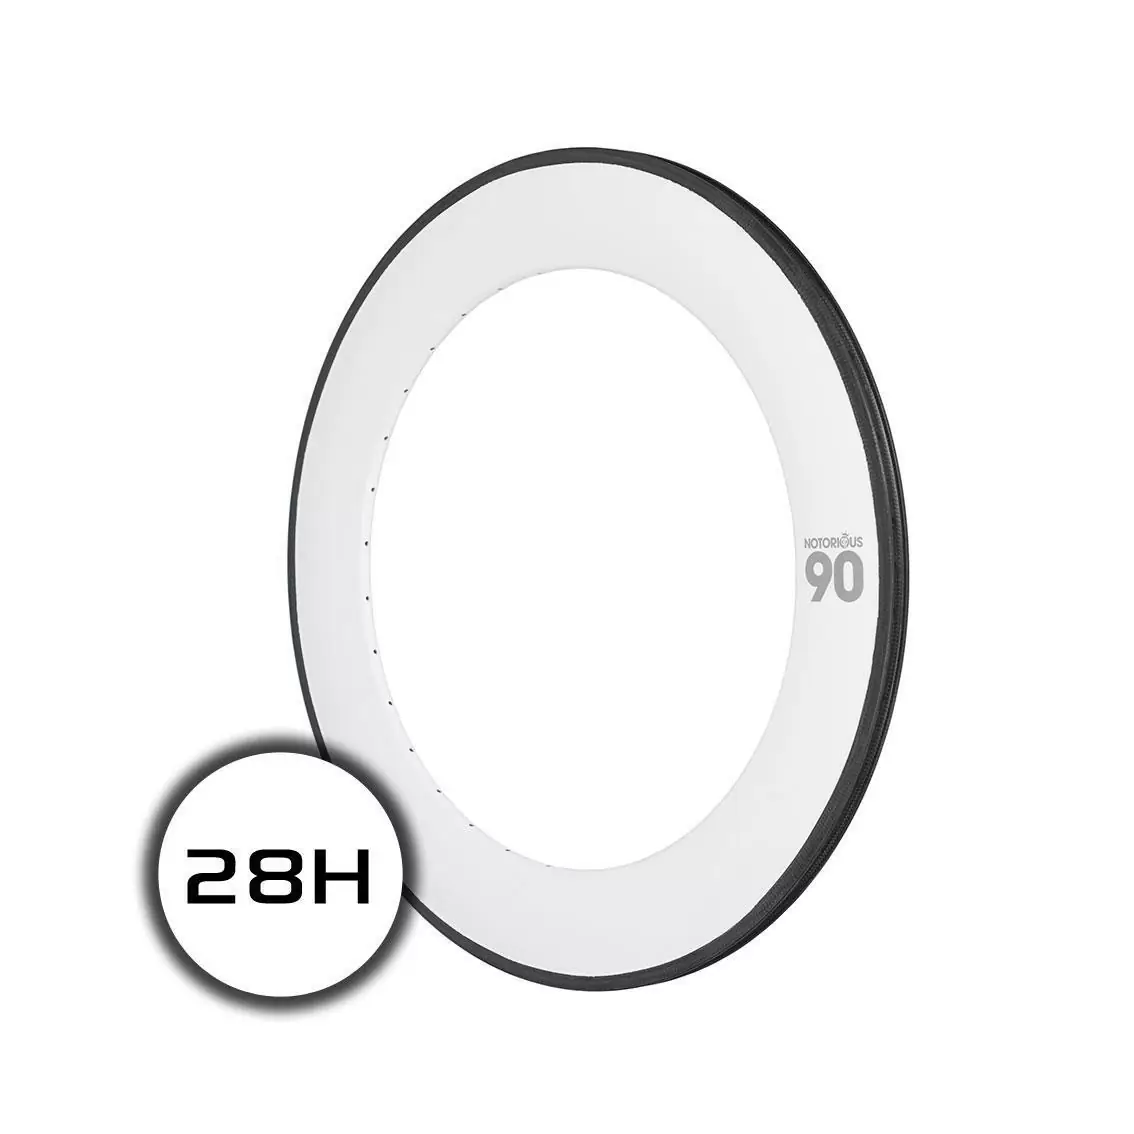 cerchio notorious 90 700c carbon 28h msw bianco - image